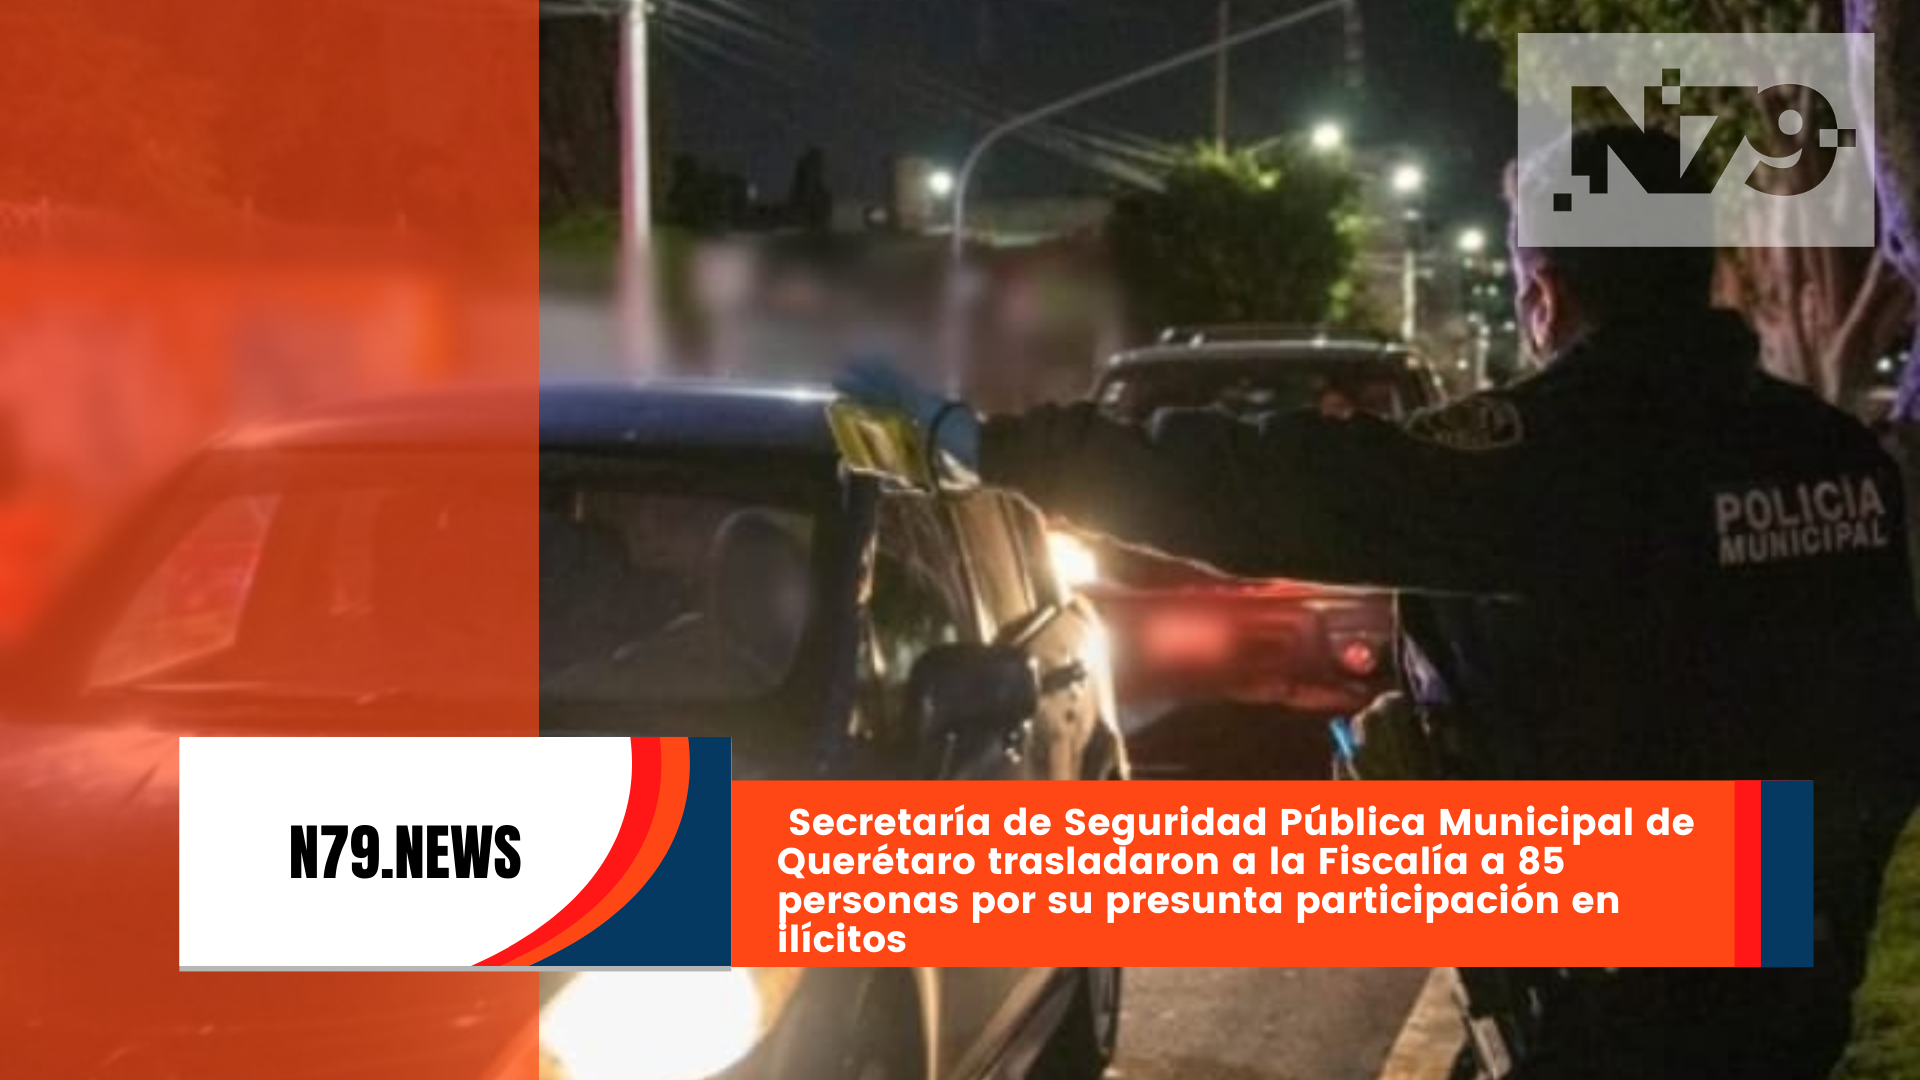 Secretaría de Seguridad Pública Municipal de Querétaro trasladaron a la Fiscalía a 85 personas por su presunta participación en ilícitos